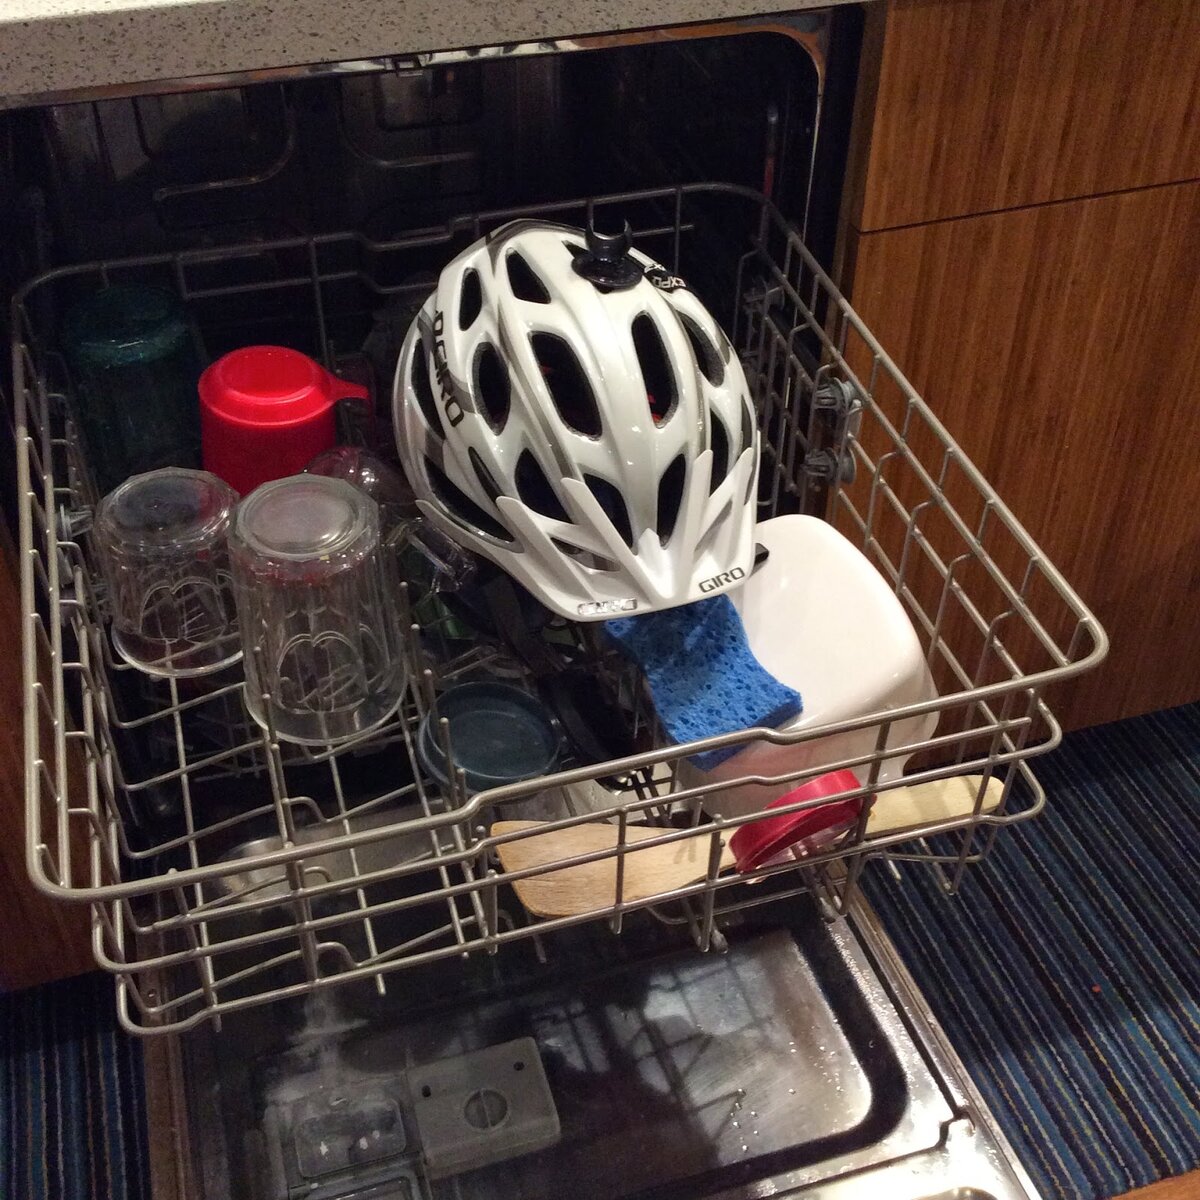 Можно мыть сковороду в посудомойке. Посуда в посудомойке. Приспособления для посудомоечной машины. Пластиковая посуда в посудомоечной машине. Пластиковый контейнер в посудомоечной машине.